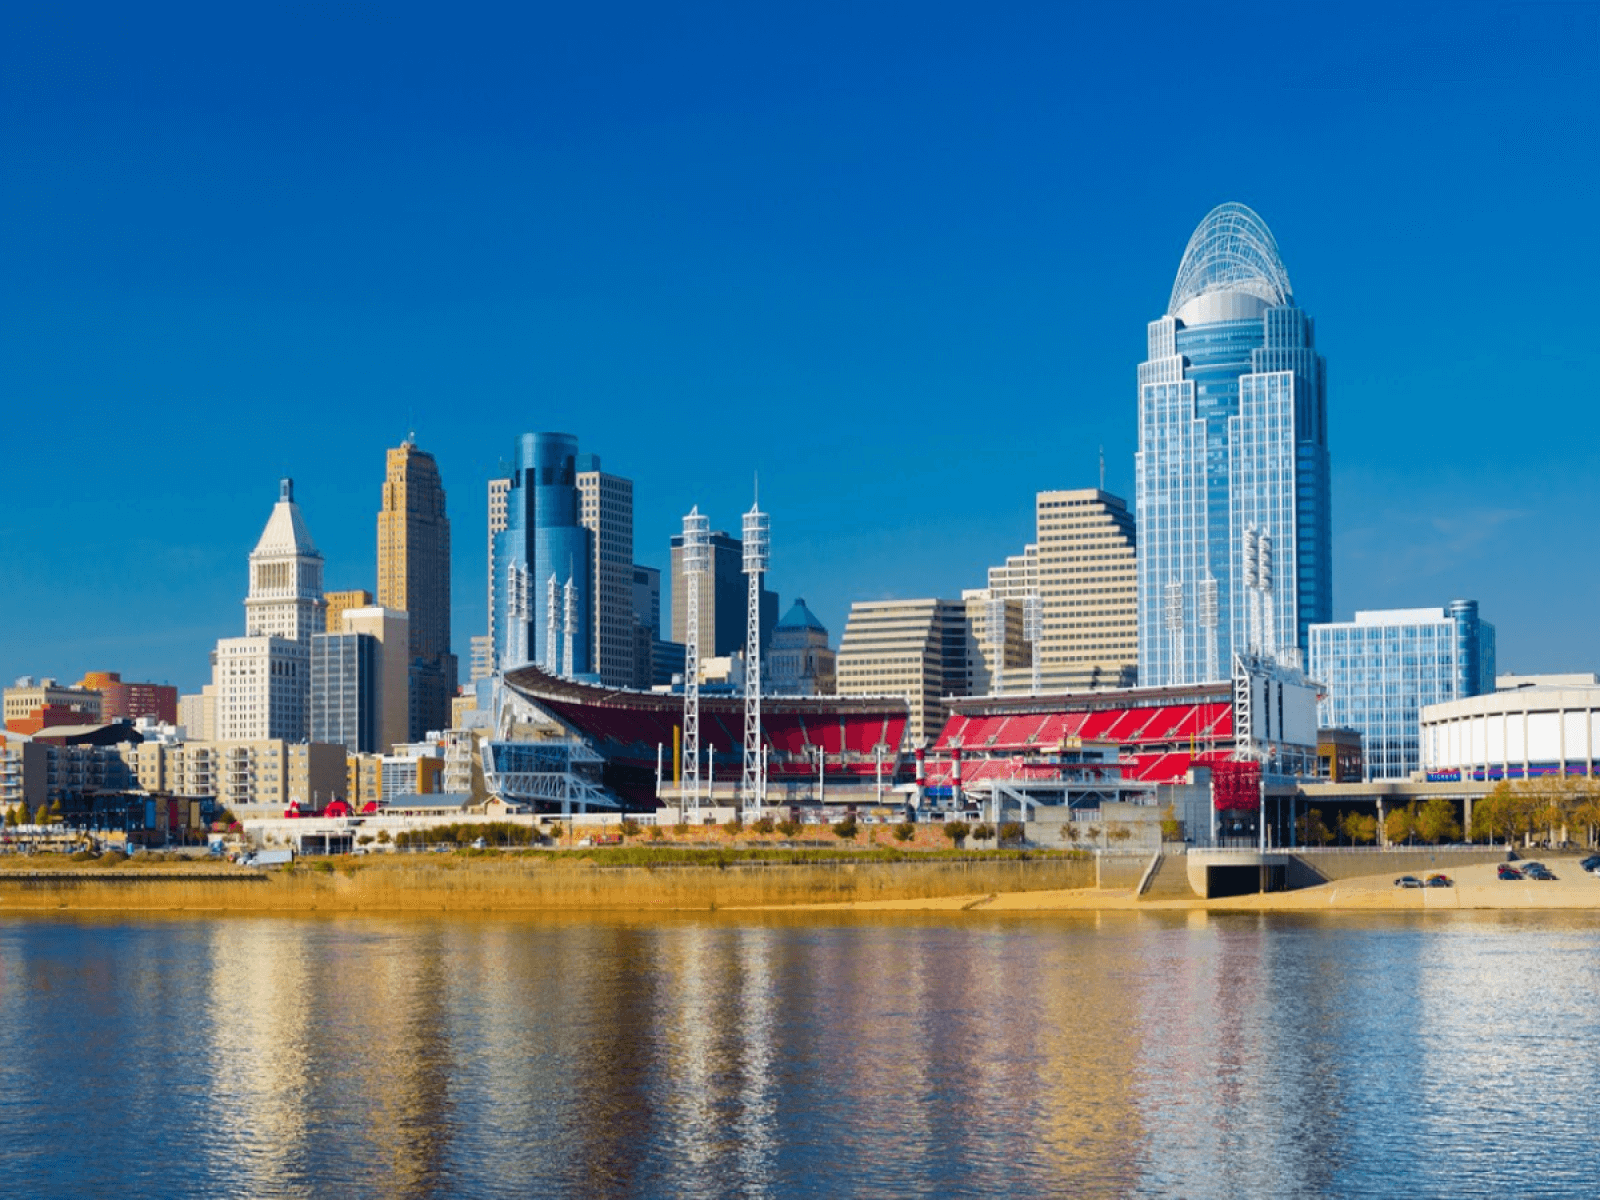 Cincinnati, OH